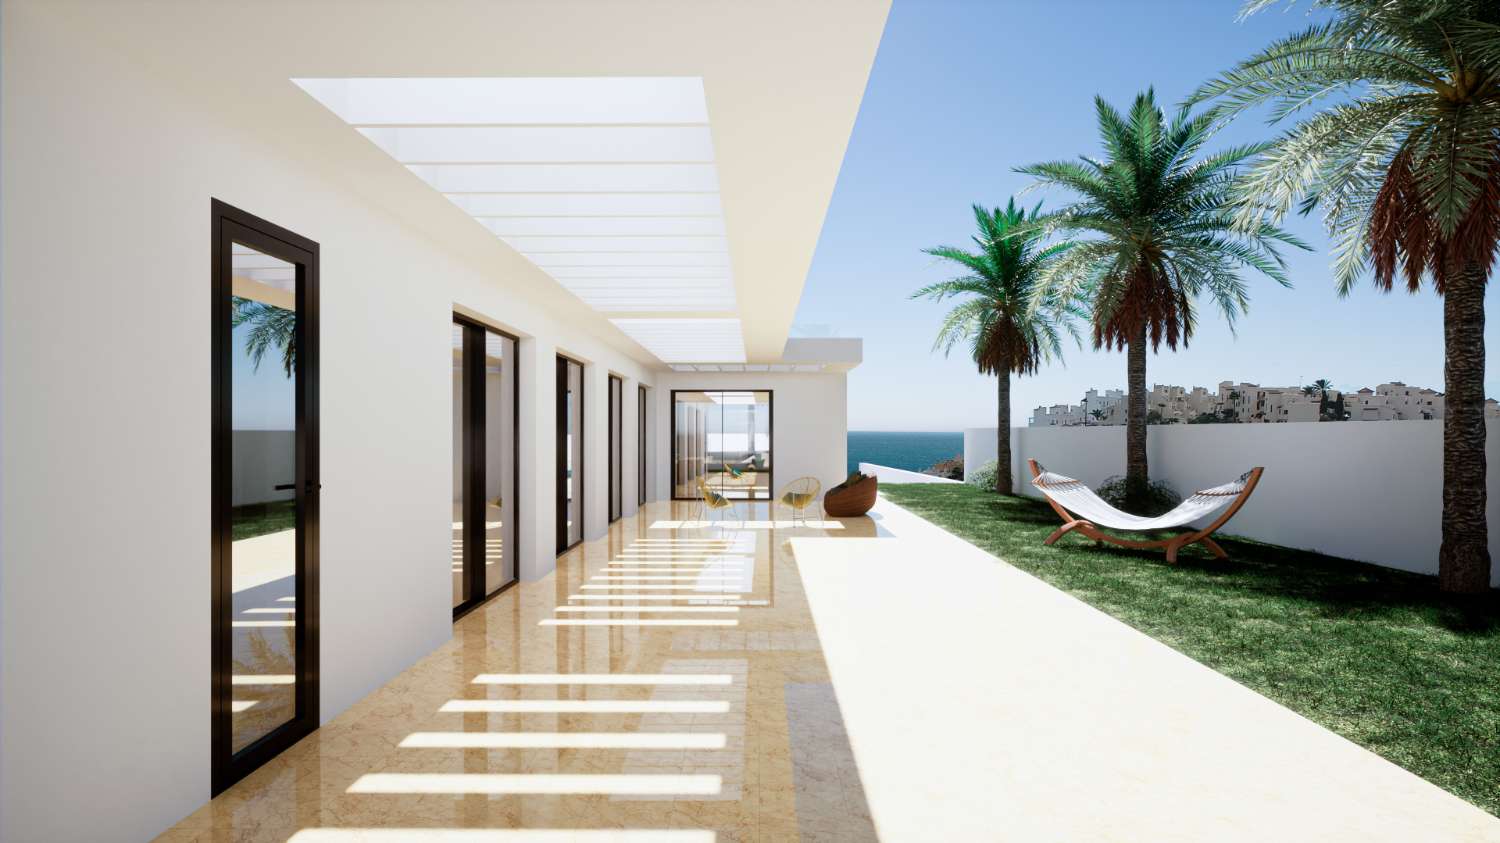 einstöckige Villa von 208 m2 auf einem Grundstück von 982 m2. Schöner Meerblick. In weiteren 229 m2 Terrassen.